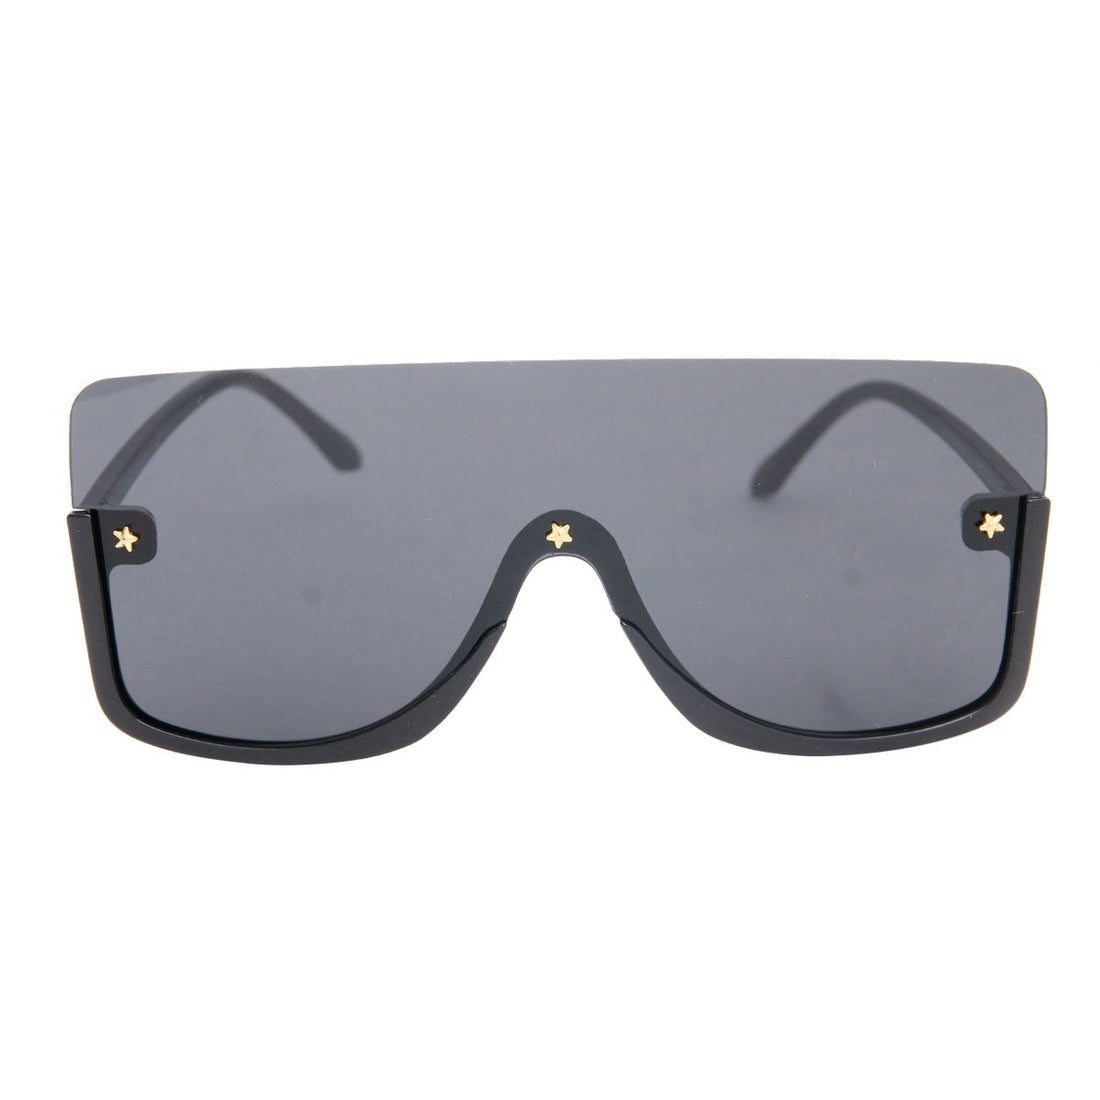 Black Bottom Frame Sunglasses